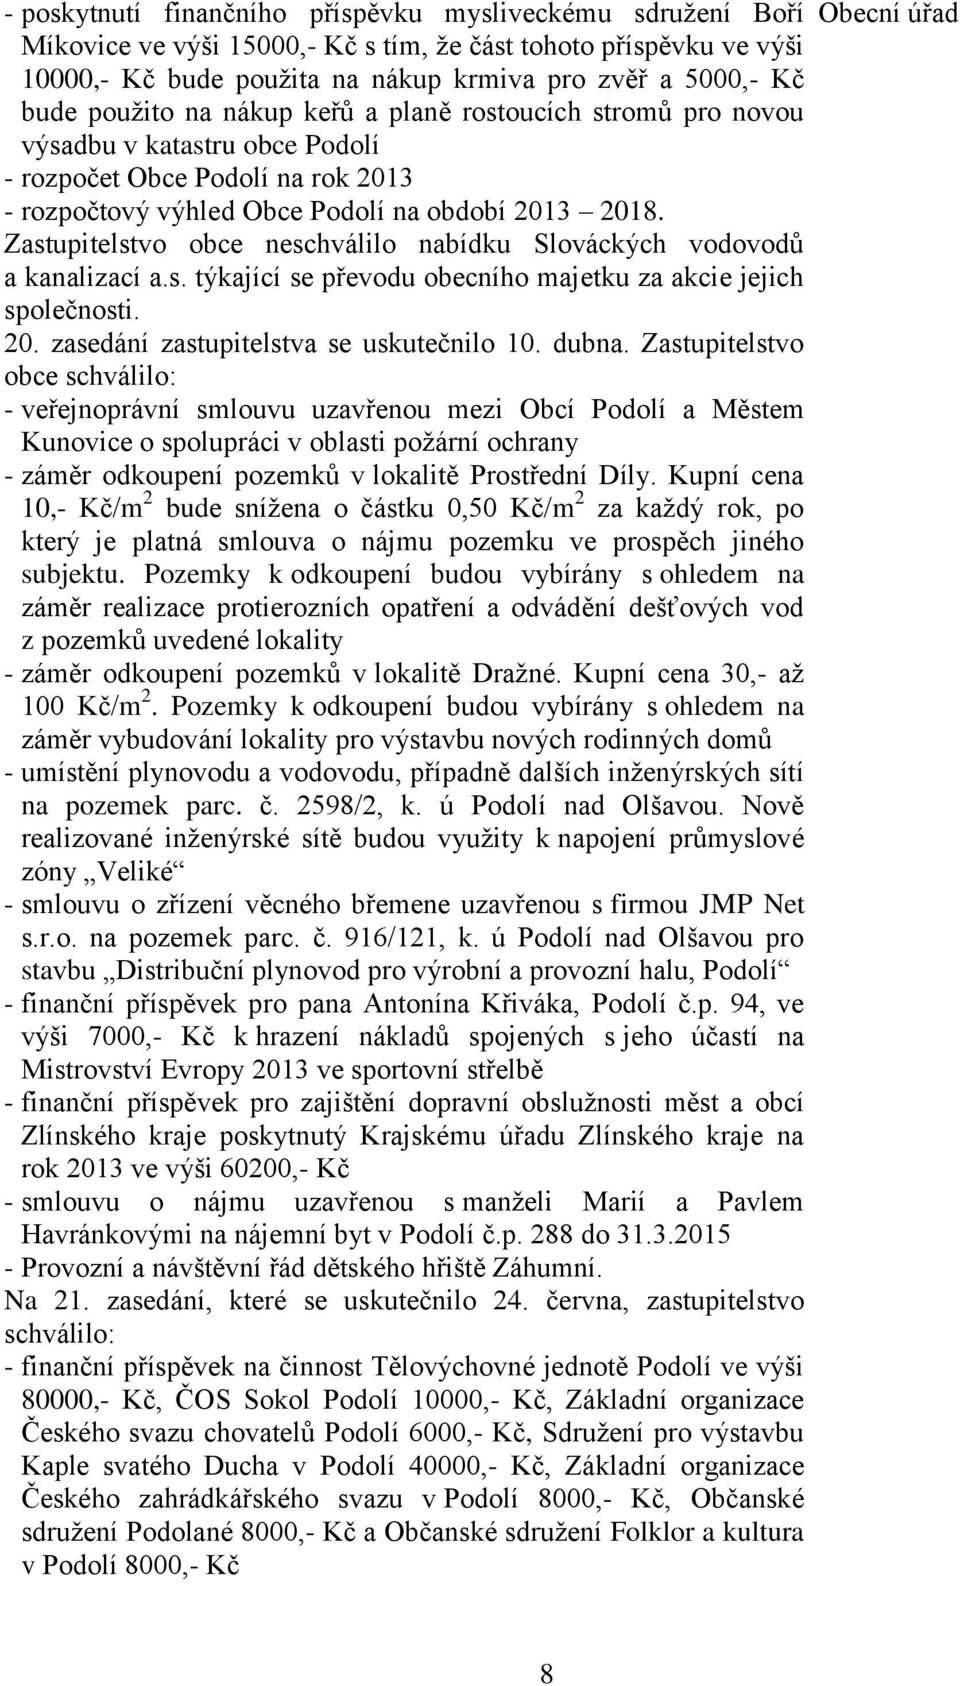 Zastupitelstvo obce neschválilo nabídku Slováckých vodovodů a kanalizací a.s. týkající se převodu obecního majetku za akcie jejich společnosti. 20. zasedání zastupitelstva se uskutečnilo 10. dubna.